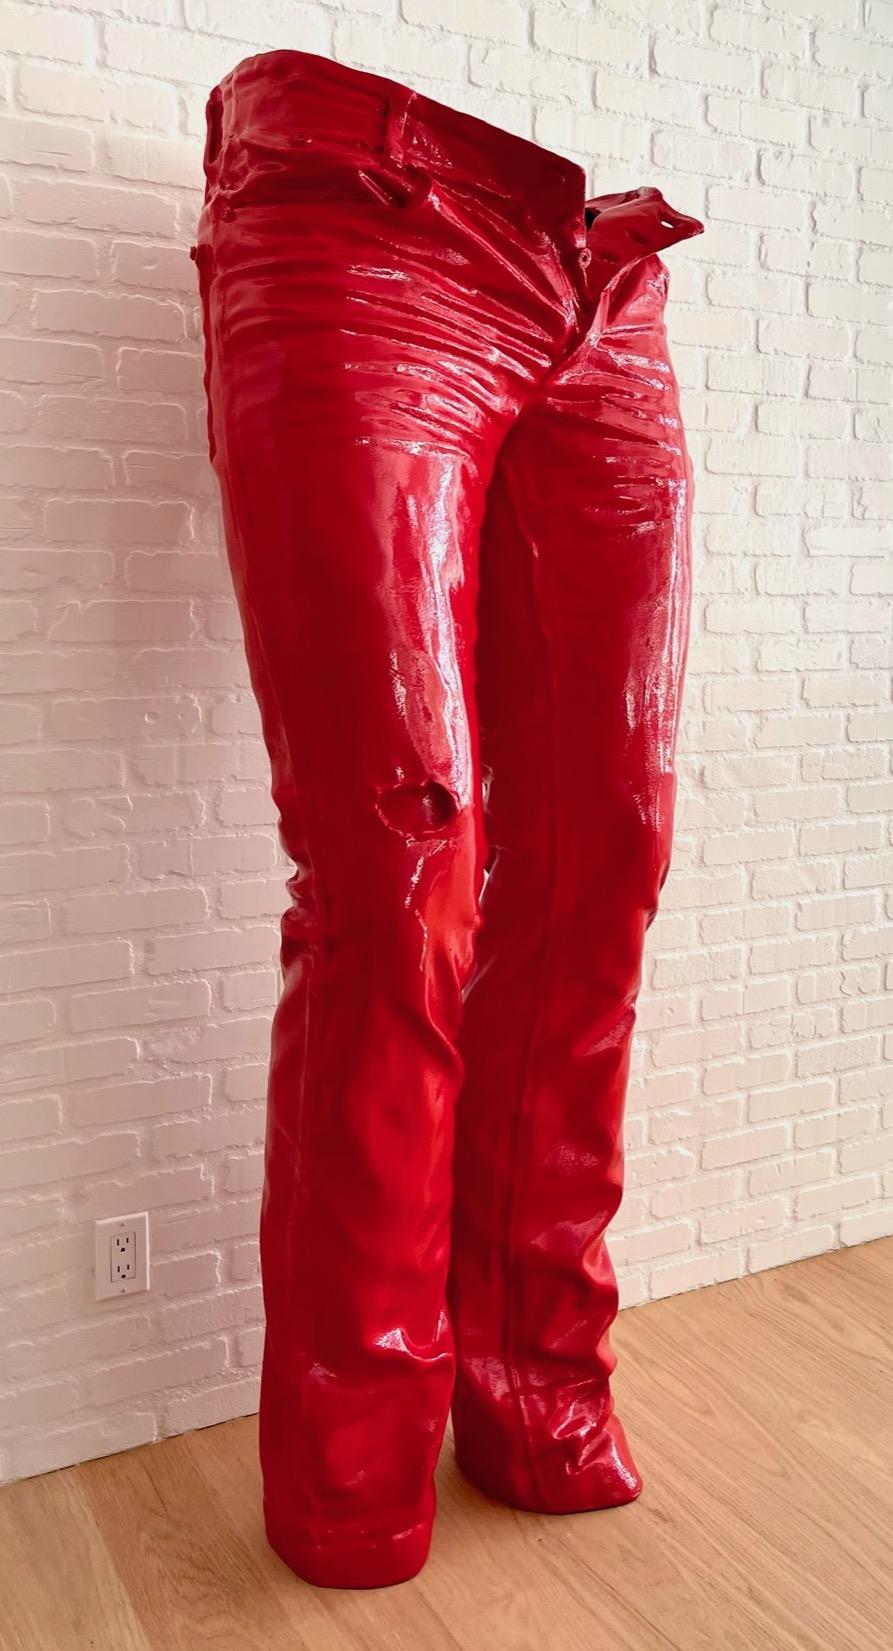 Sculpture en résine "Born Wild" 71" x 20" x 20" inch Ed. 3/4 par Richard Orlinski

Provenance : Collection privée

Livré avec COA original 

Richard Orlinski est l'artiste français contemporain le plus vendu au monde depuis 2015. Il a commencé sa